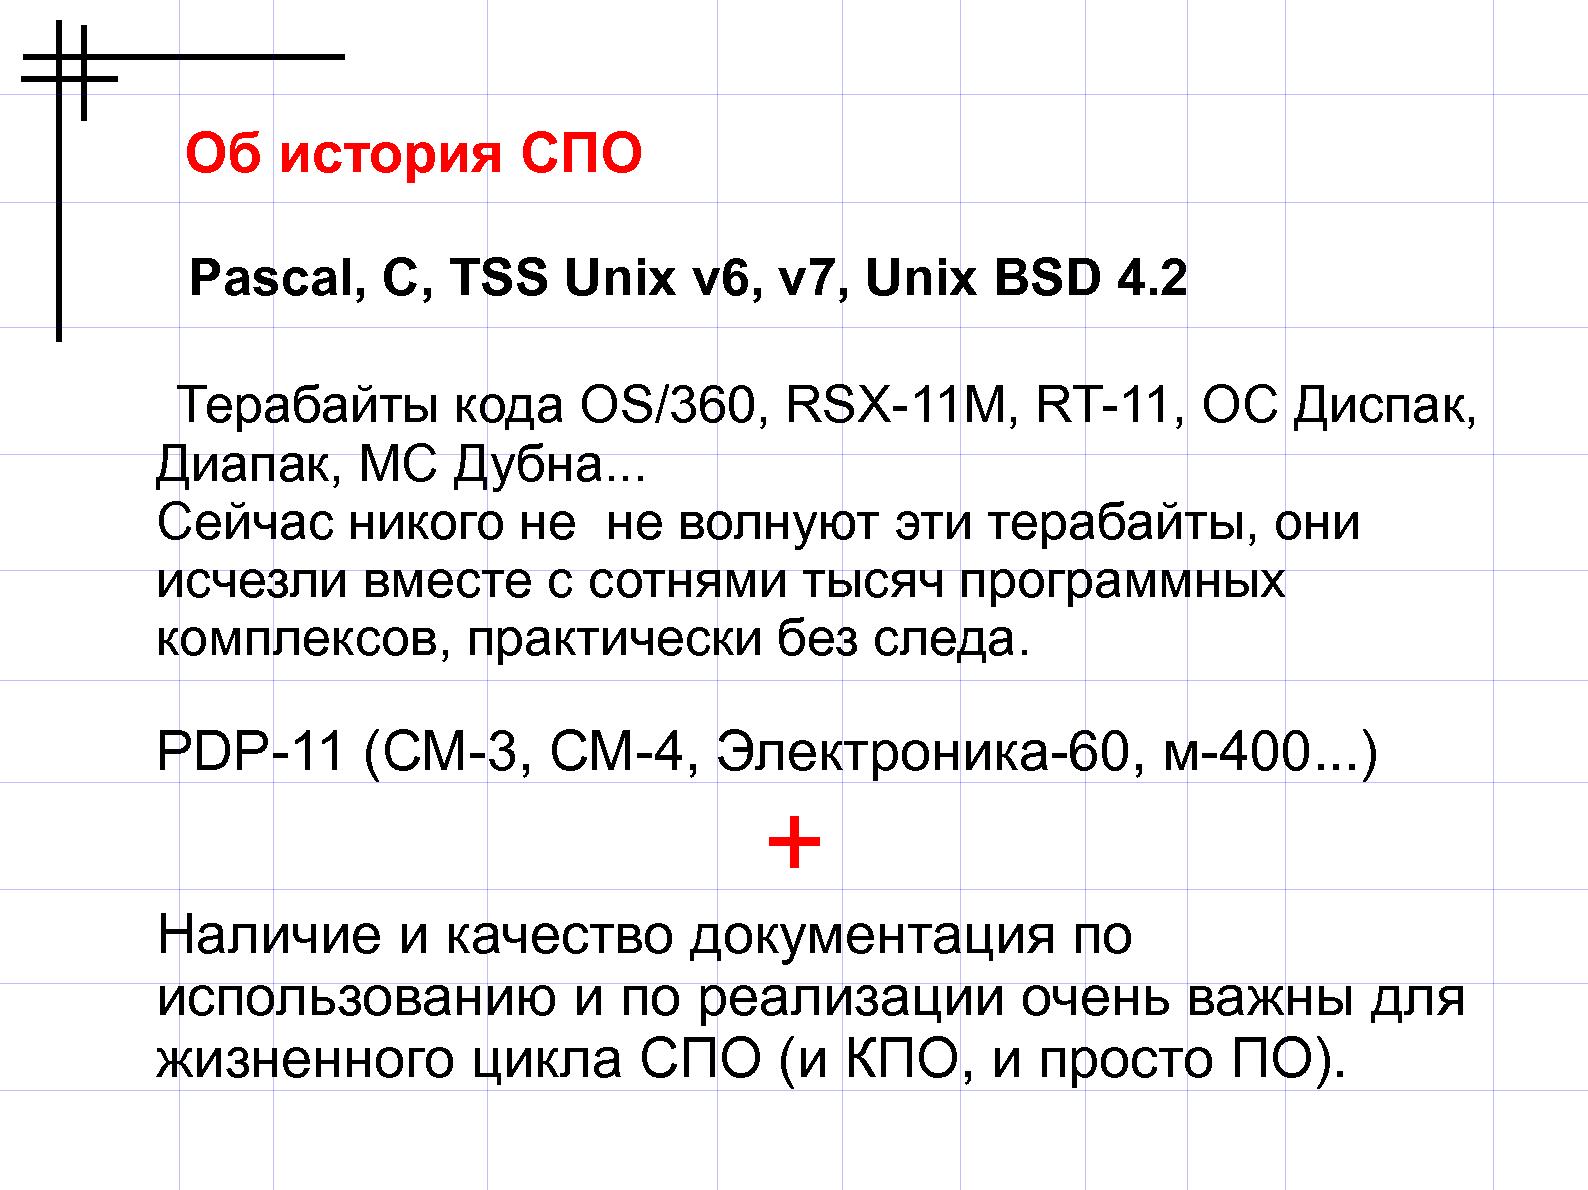 Файл:Свободное программное обеспечение для NXT (Валерий Руденко, OSEDUCONF-2013).pdf